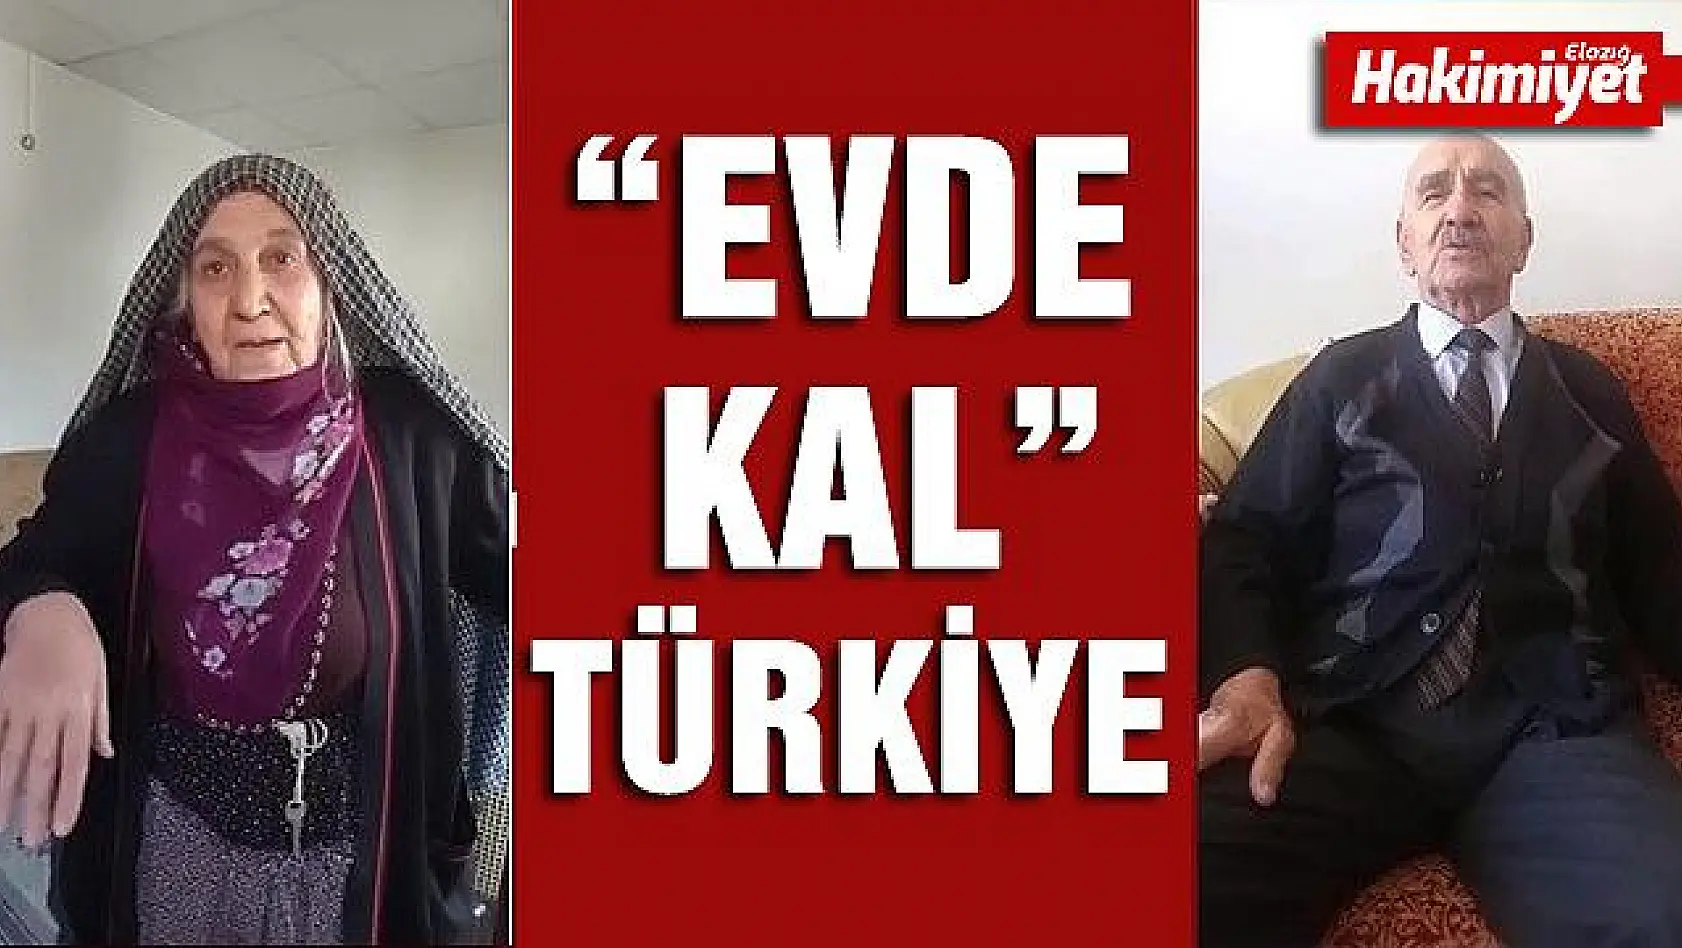 Elazığlı yaşlılardan 'Evimdeyim Türkiye' klibi